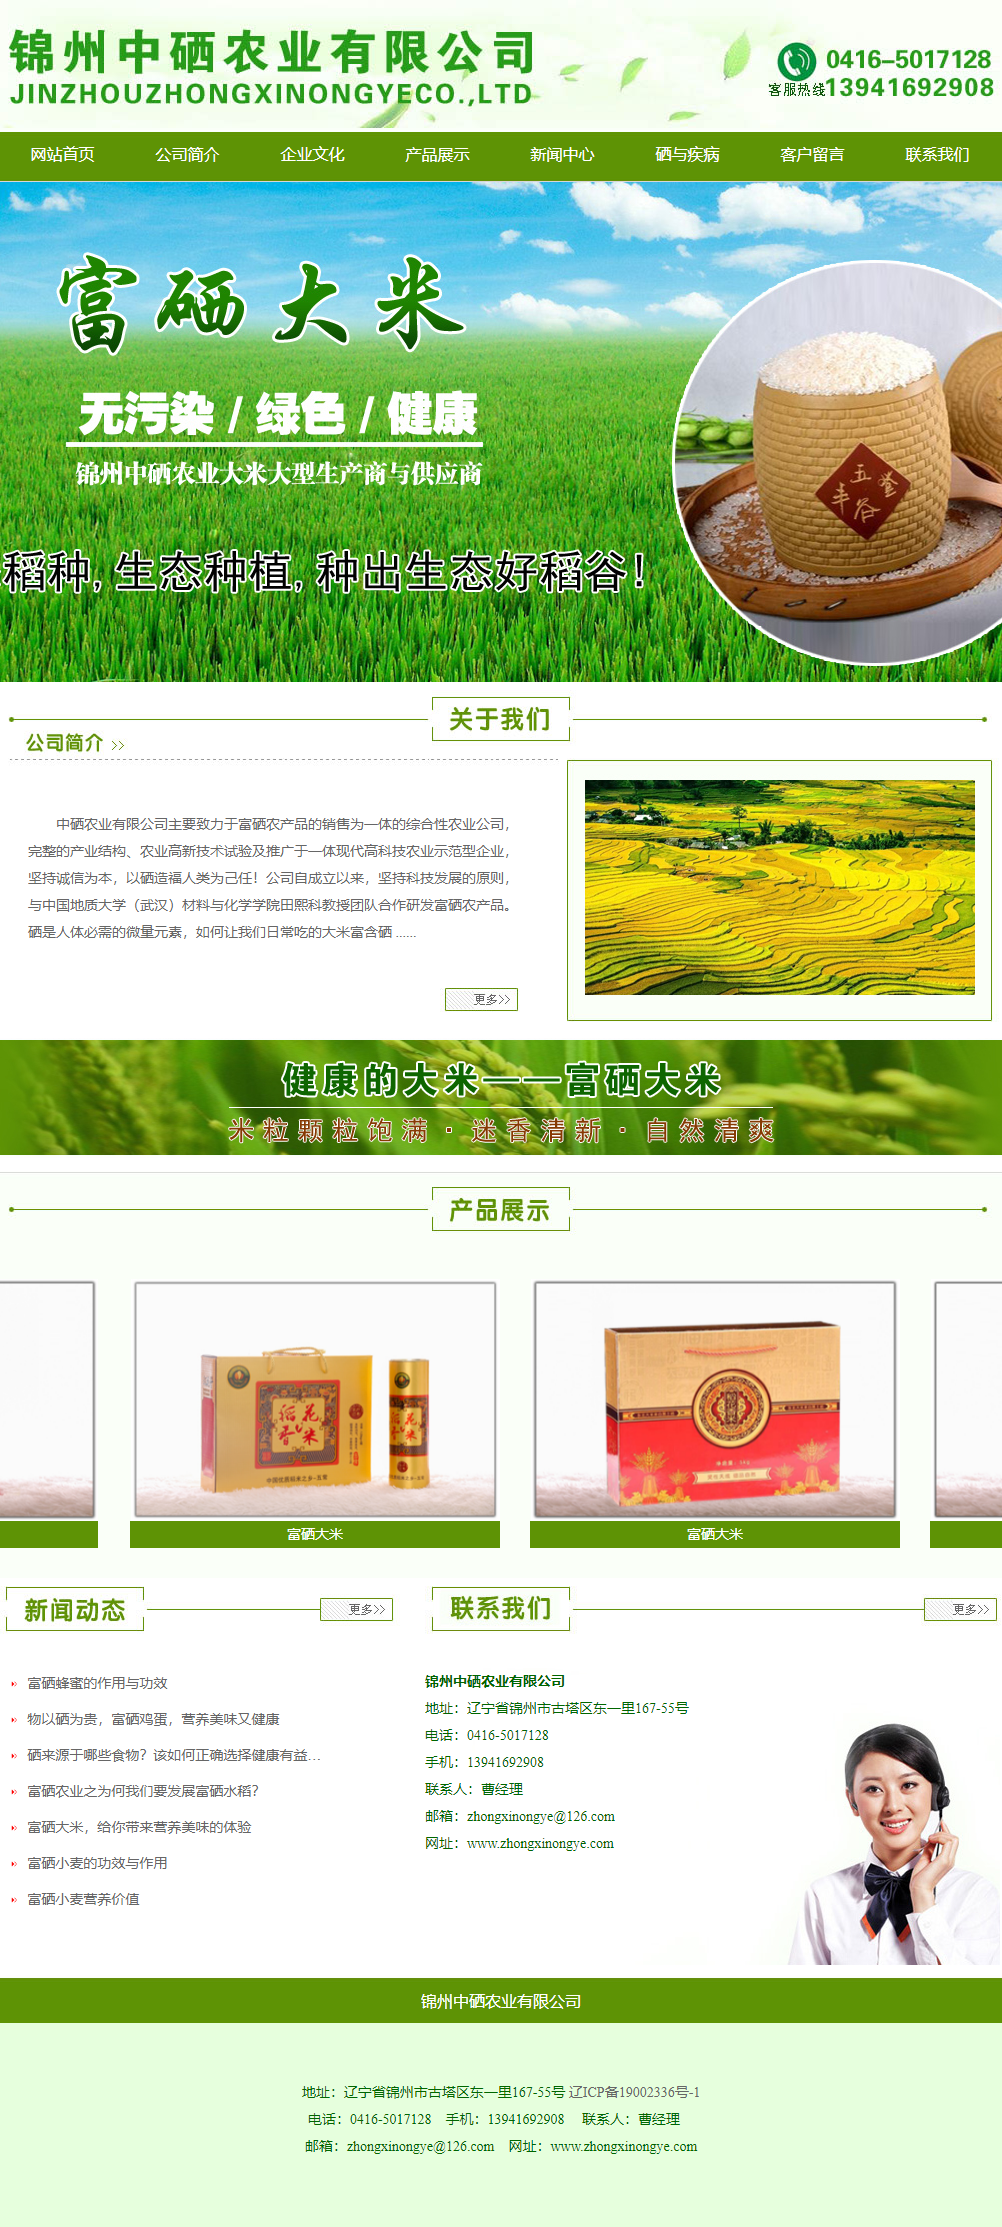 锦州中硒农业有限公司网站案例